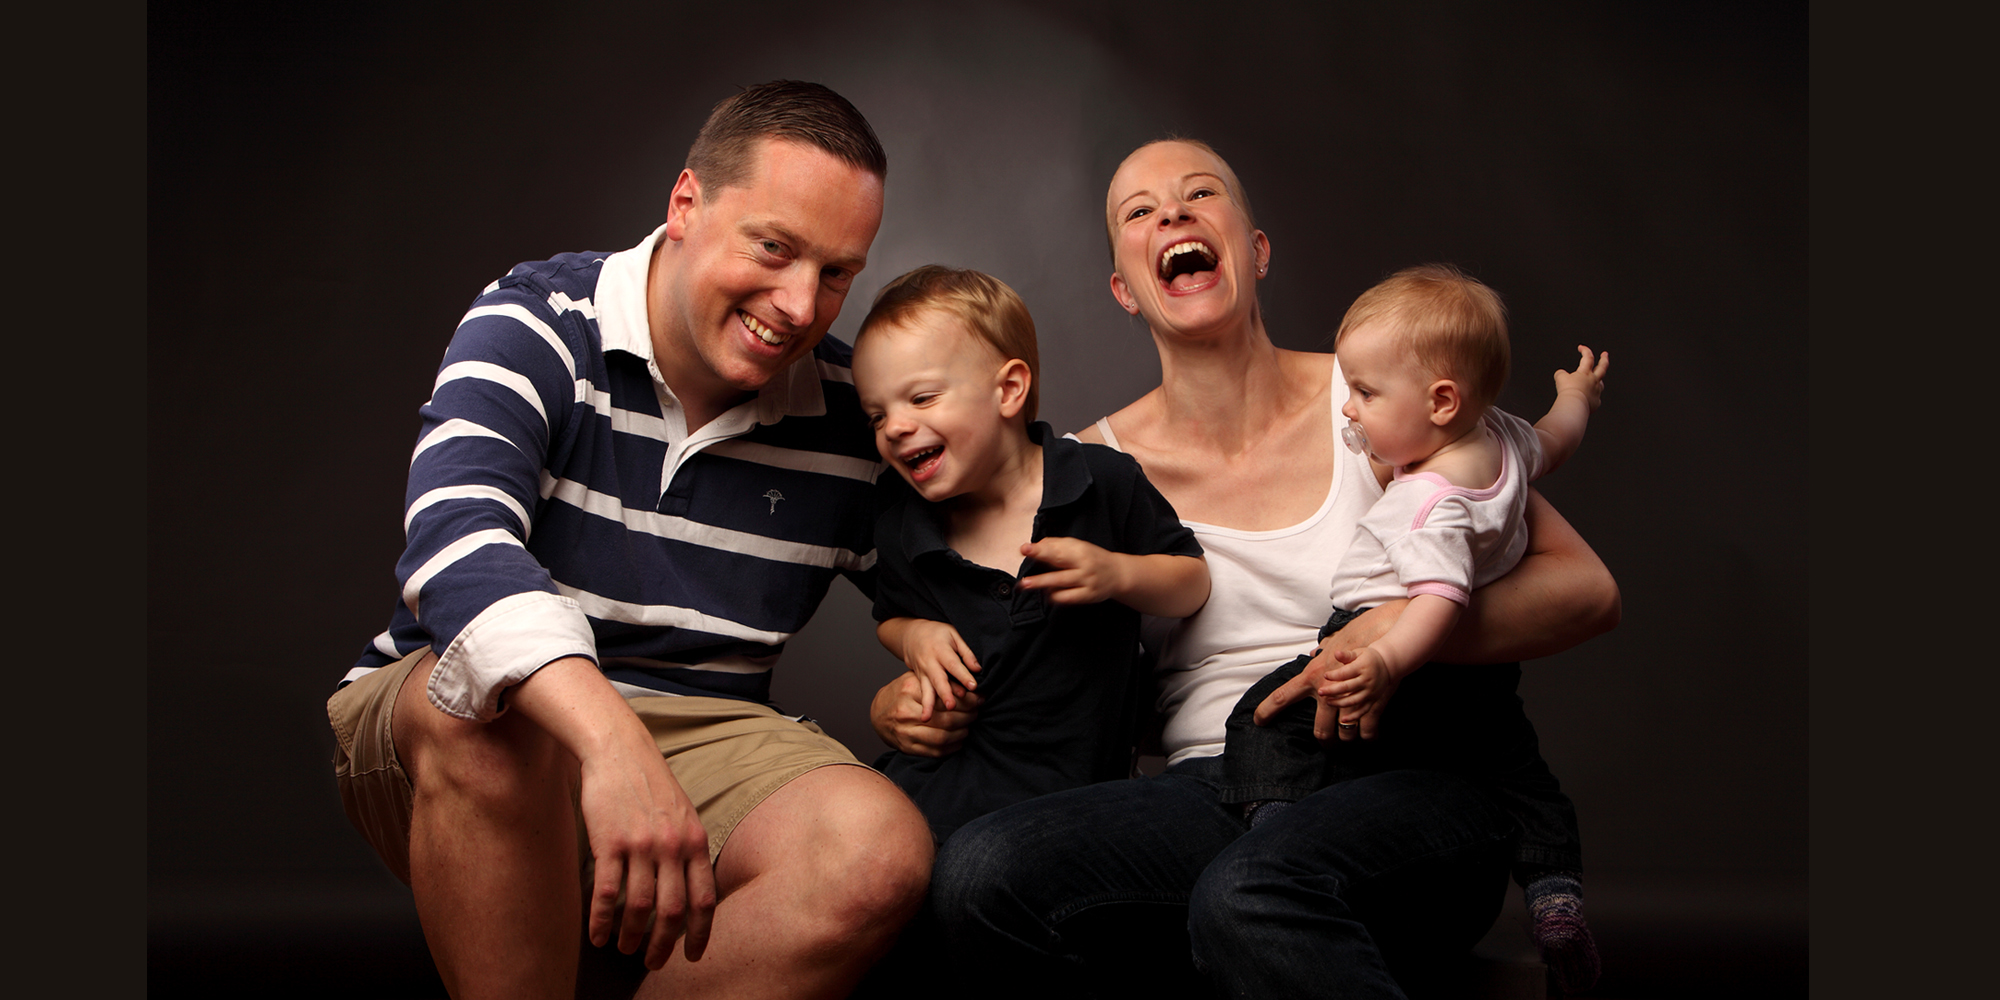 Portrait von einer Frau, die lauthals lacht und einen Säugling mit Schnuller auf dem Arm trägt; daneben sitzt ein Mann mit freundlichem Gesichtsausdruck und beide halten einen kleinen Jungen zwischen sich fest (Familienportrait).